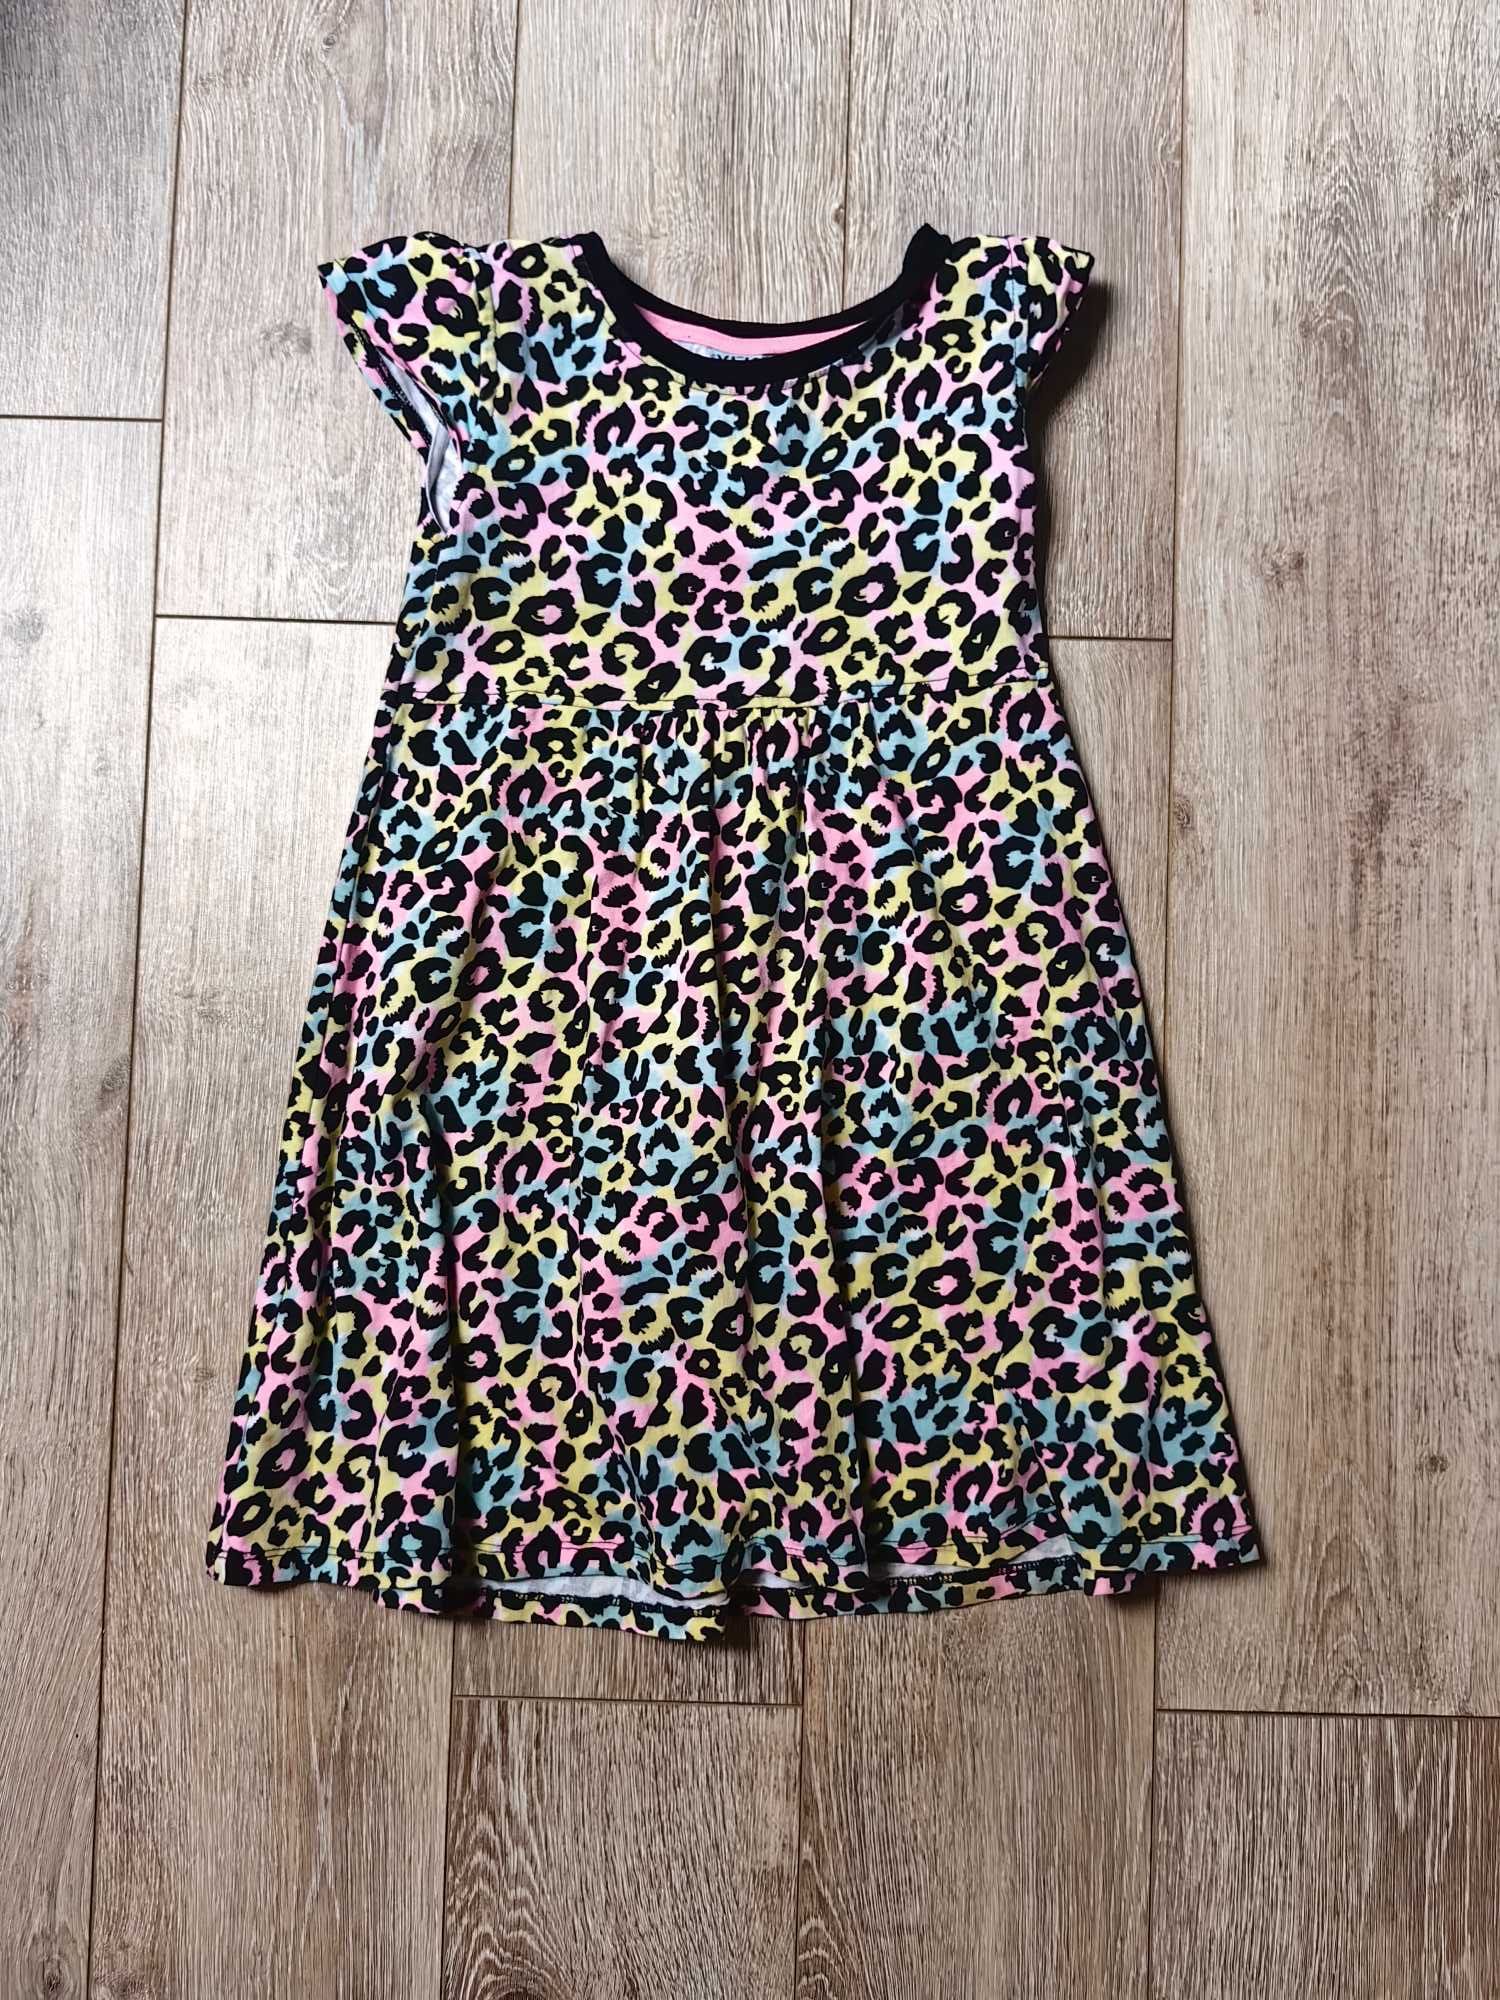 3 sukienki dla dziewczynek Sinsey-wiosenna +Gratis opaska:)